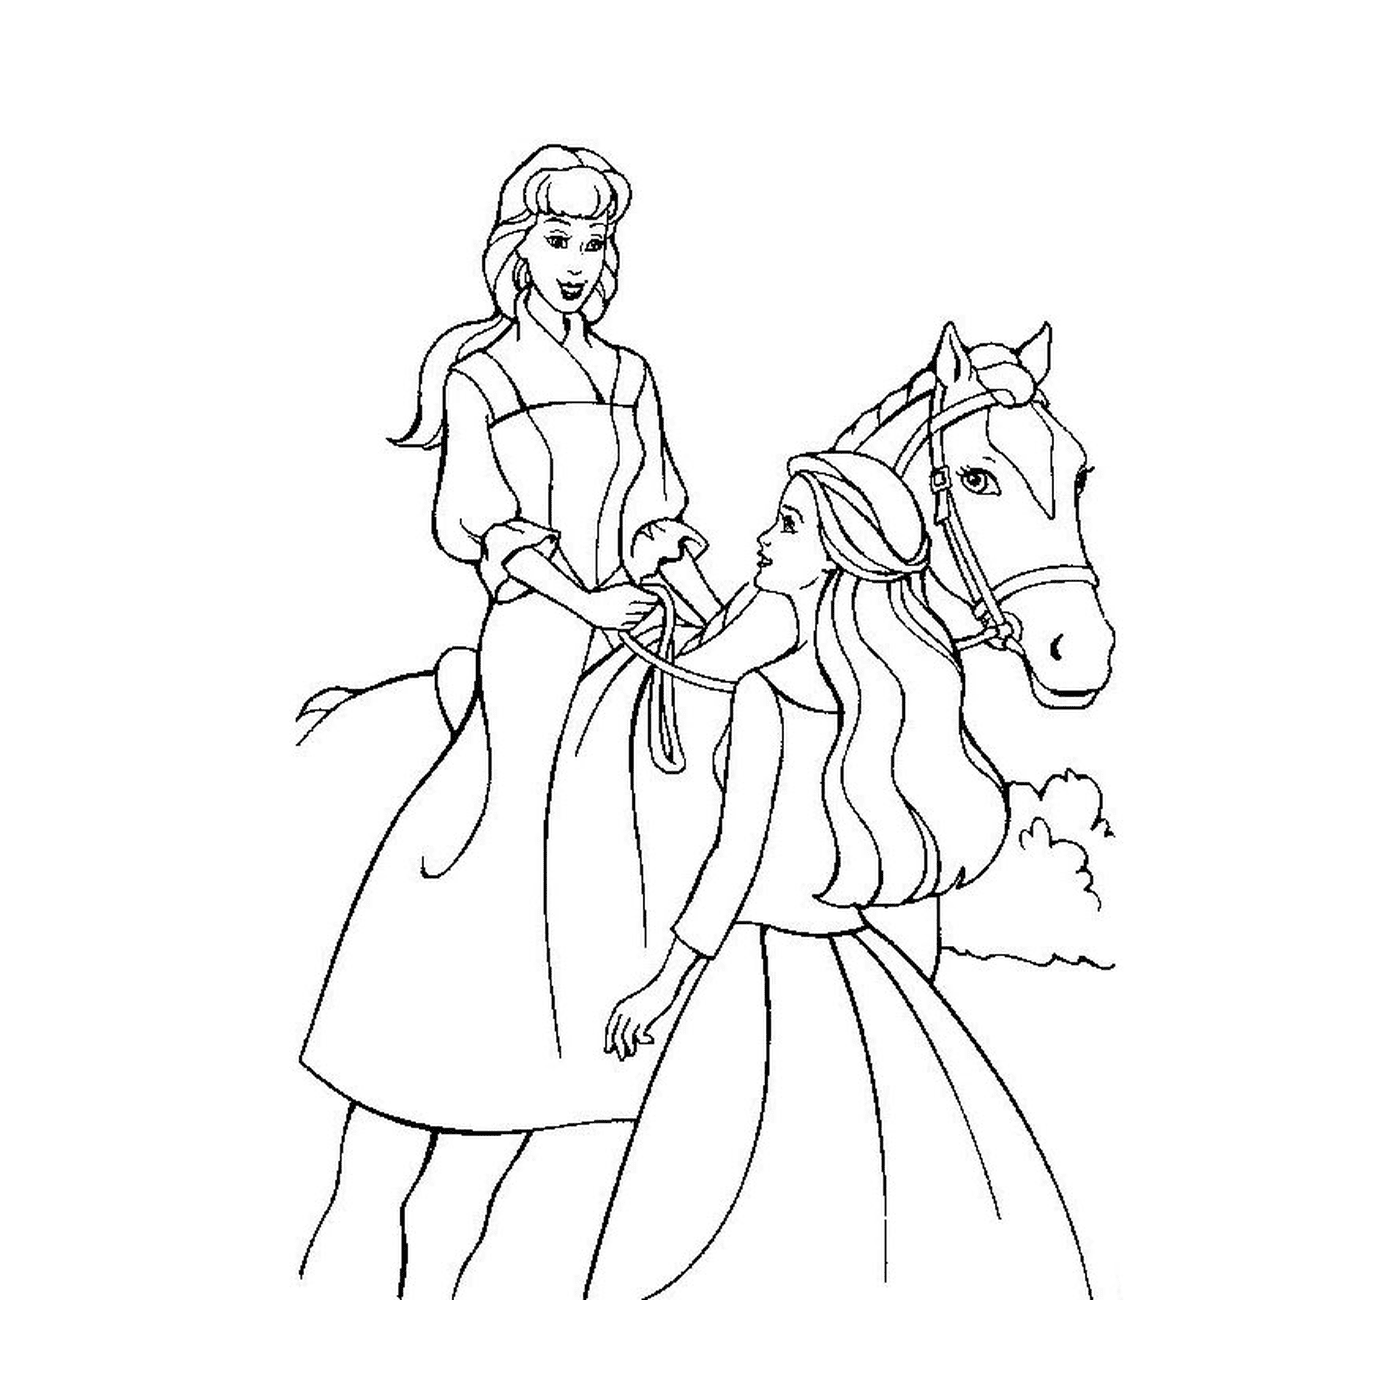  घोड़े पर दो जवान औरतों के साथ घोड़े को रौंदना 